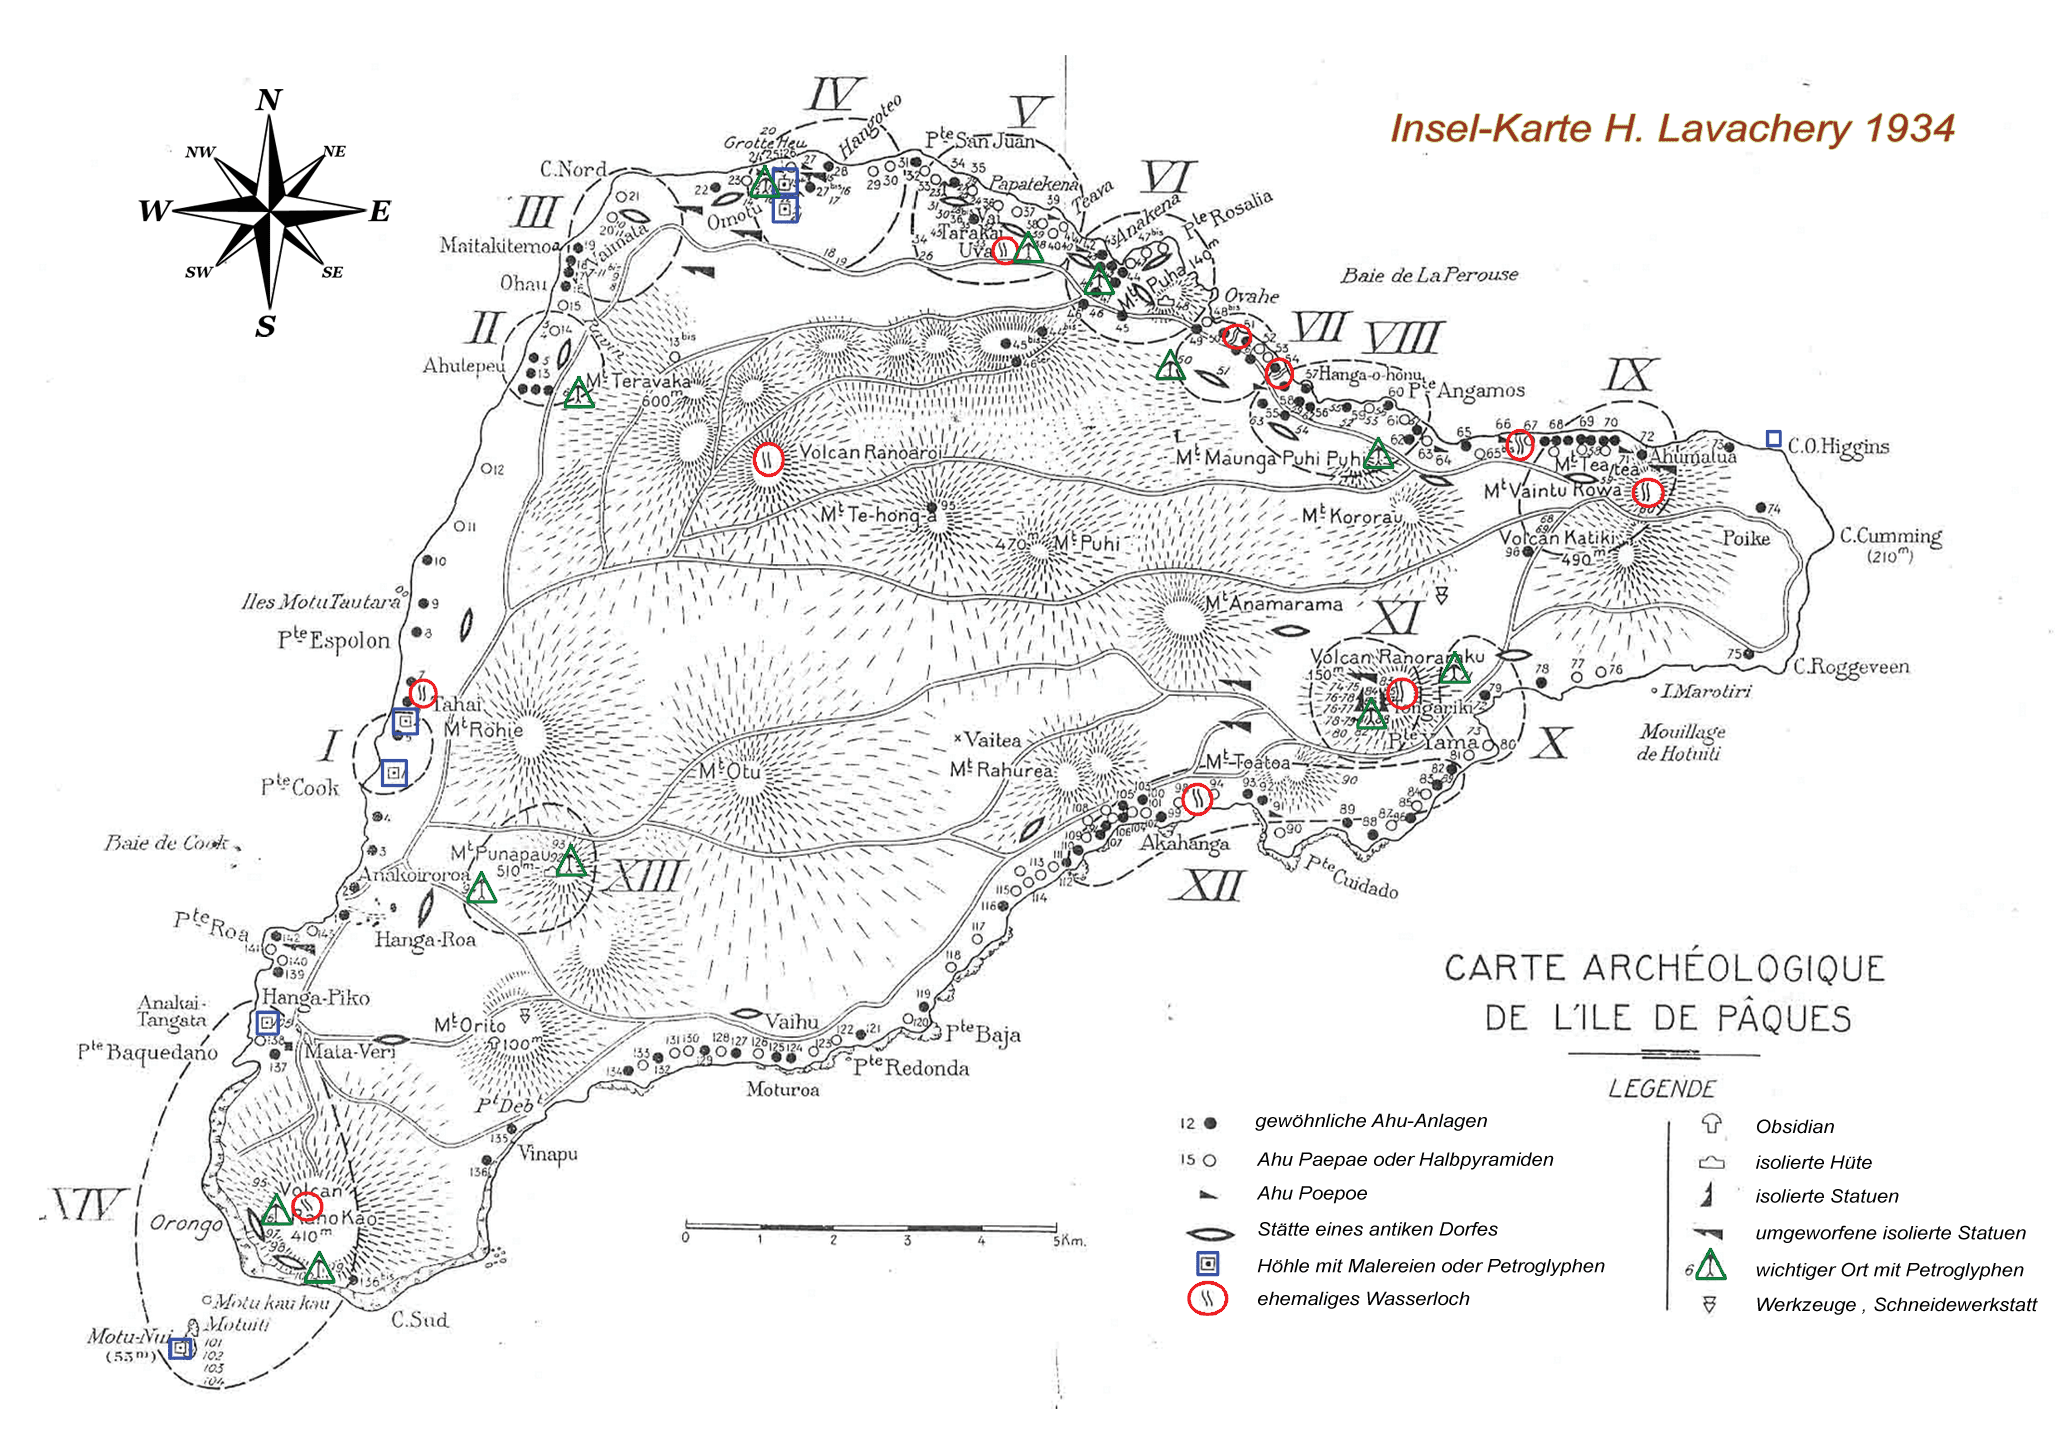 Karte von der Osterinsel aus dem Jahre 1934 von Henry Lavachery